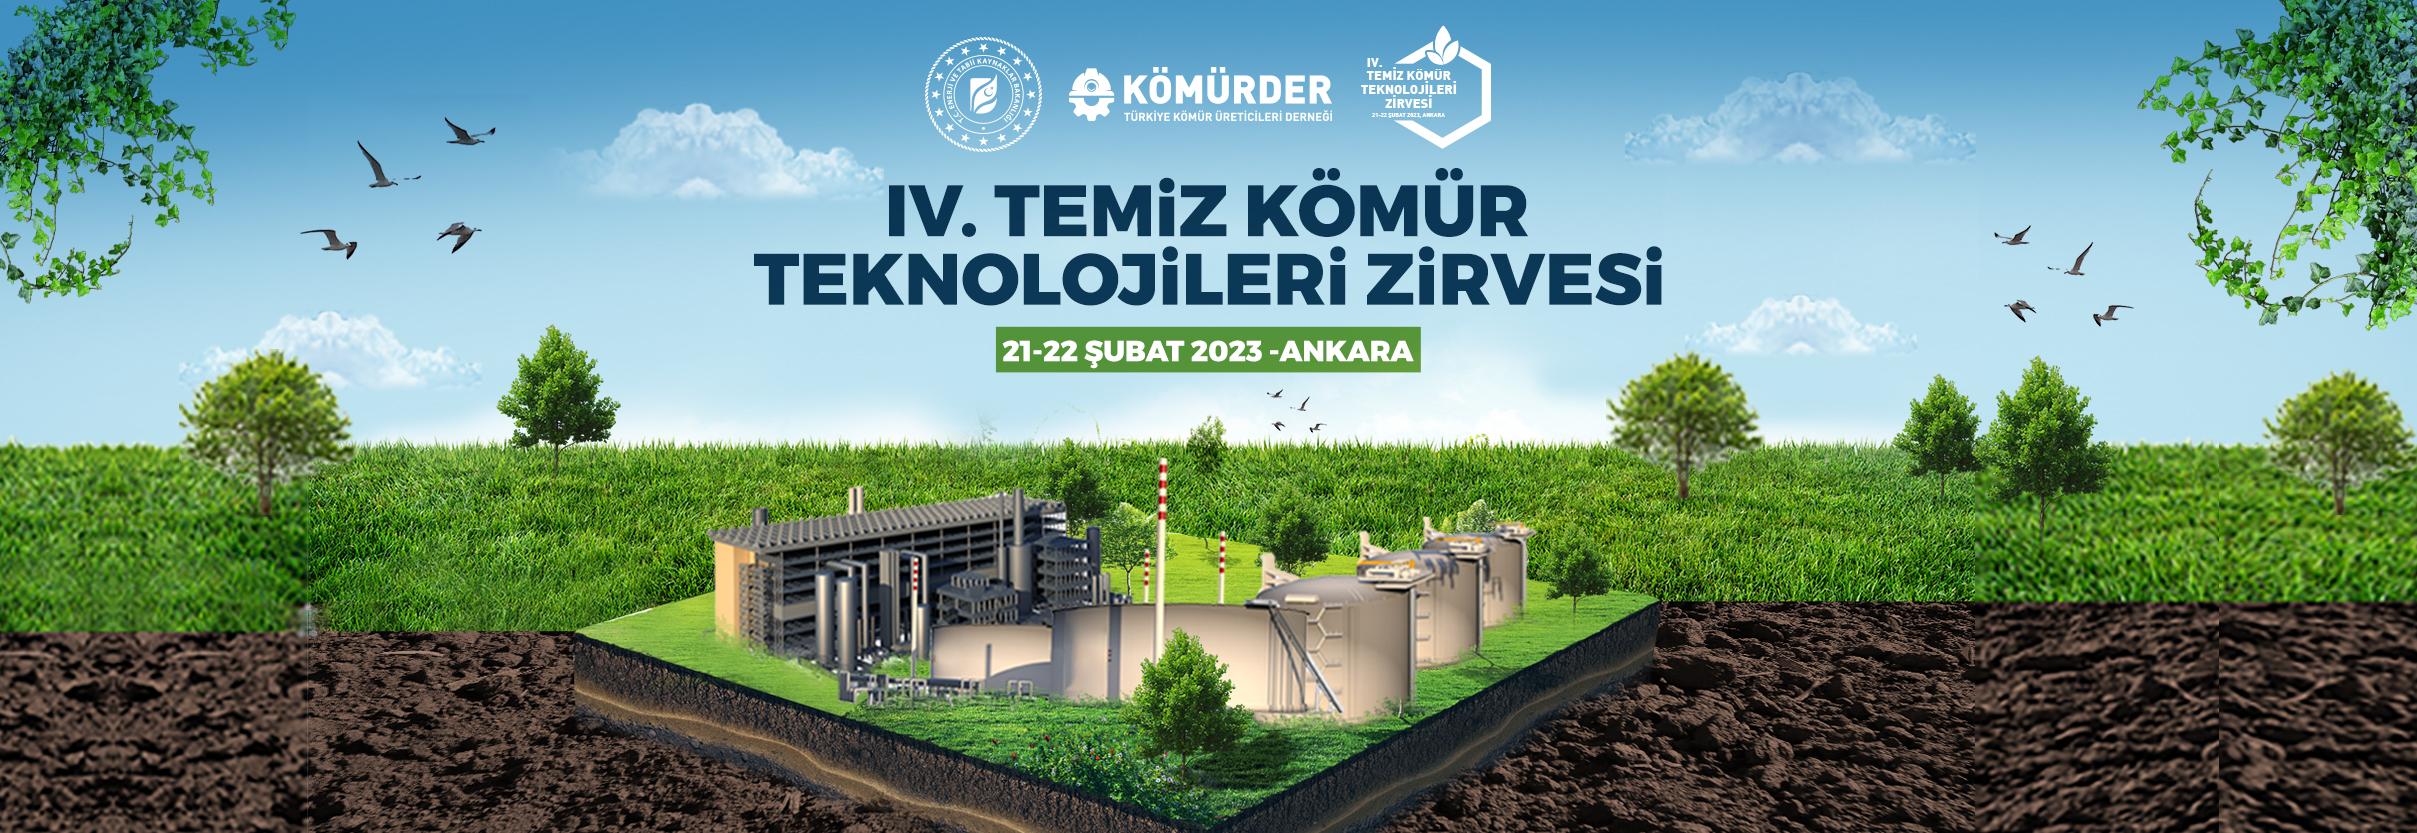 Kömürder |  Türkiye Kömür Üreticileri Derneği